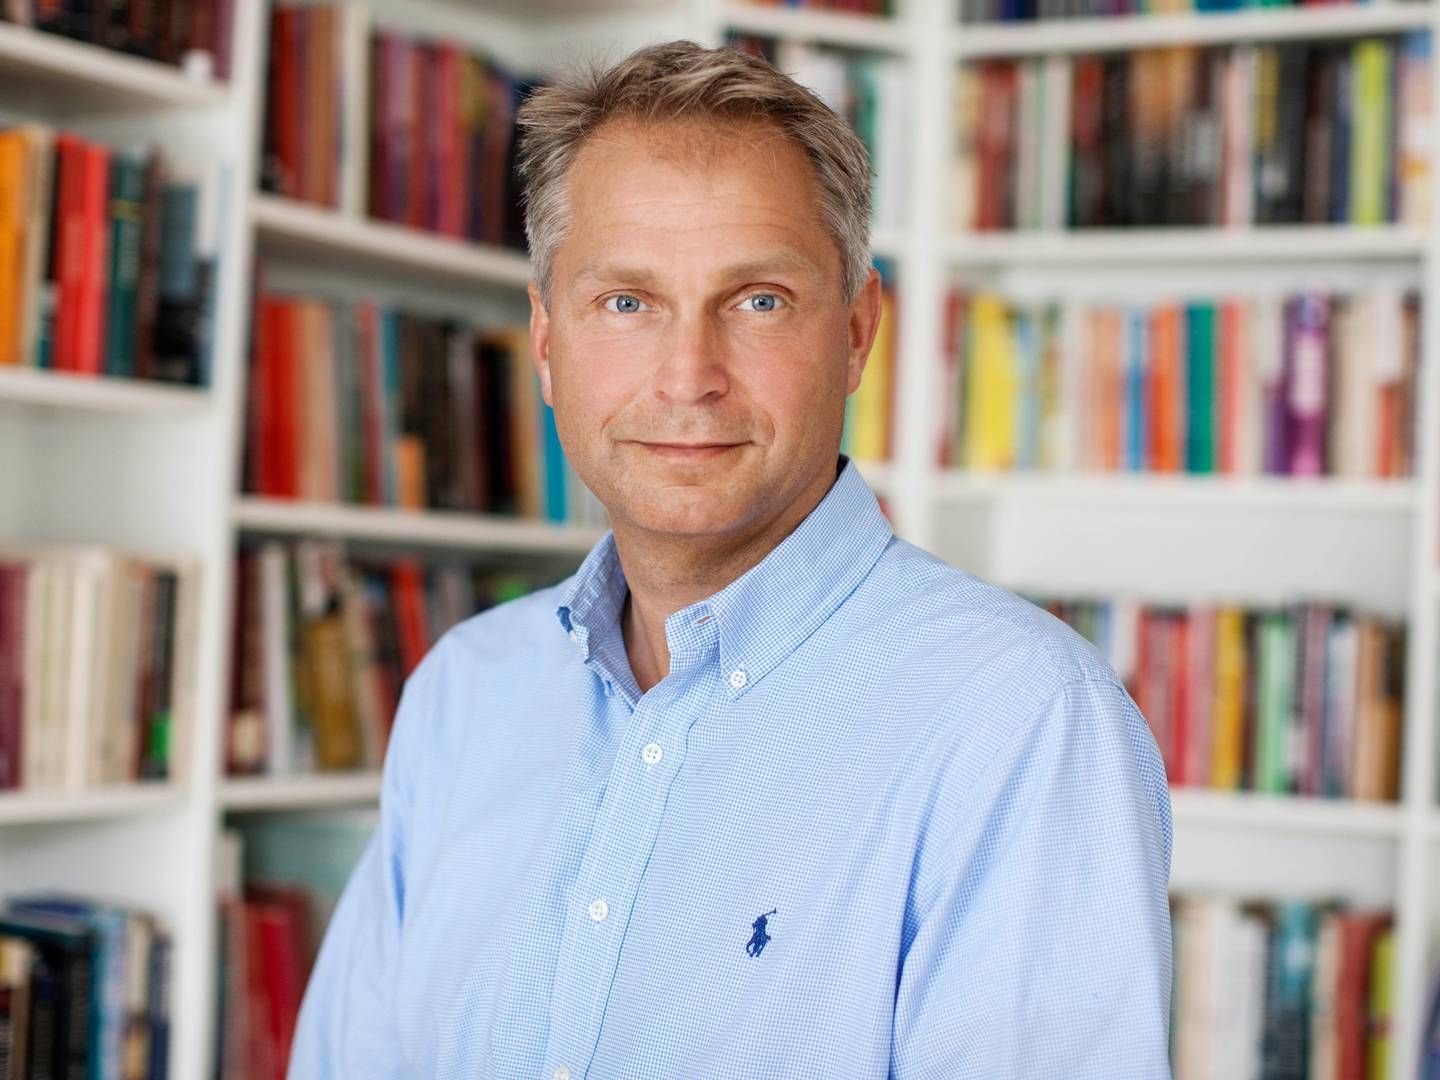 Adm. direktør Lars Boesgaard kan glæde sig over en vækst i omsætningen hos Lindhardt og Ringhof på 35 pct. | Foto: Pr/lindhardt og Ringhof